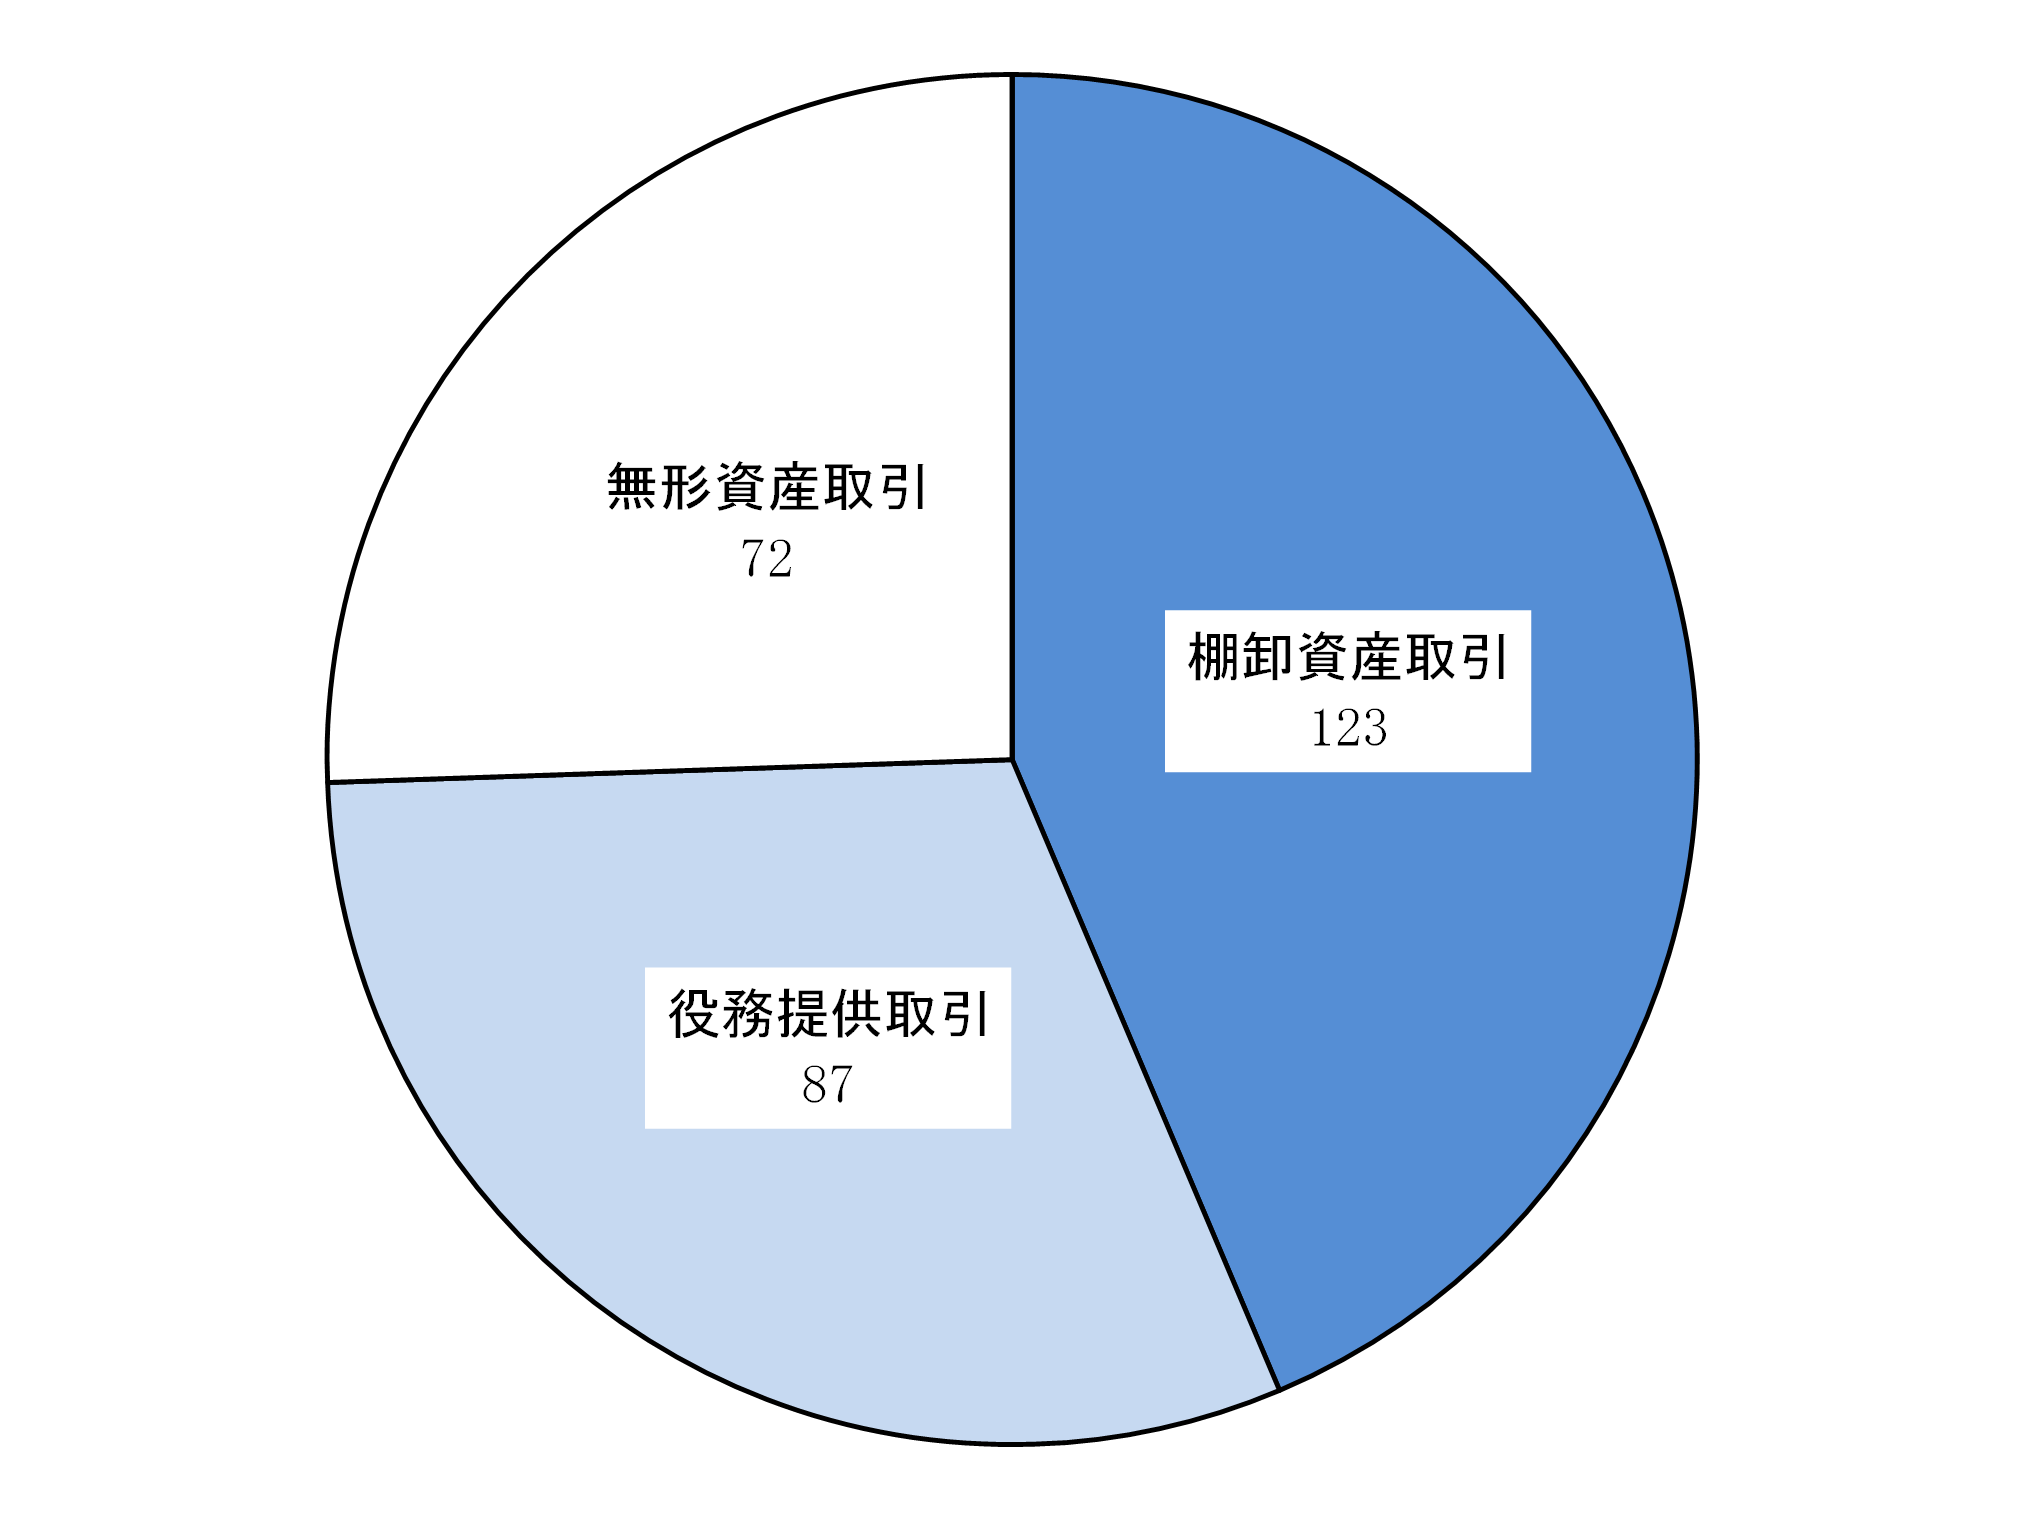 対象取引別内訳の円グラフ